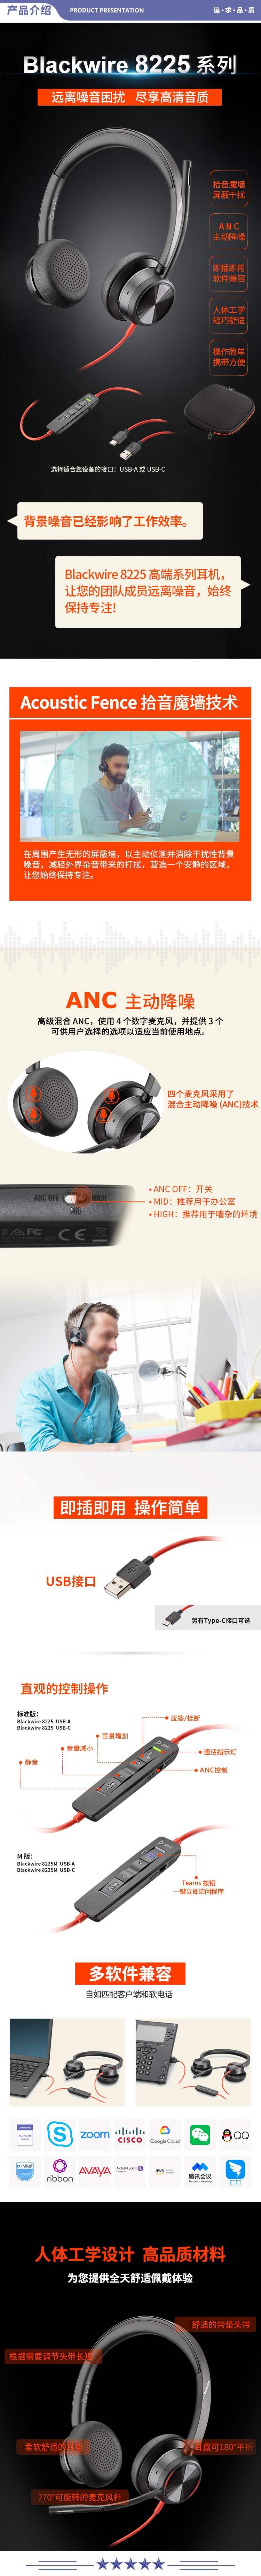 缤特力 PLANTRONICS BW8225 主动降噪办公耳麦 高保真立体声耳机 USB有线会议耳麦 2.jpg